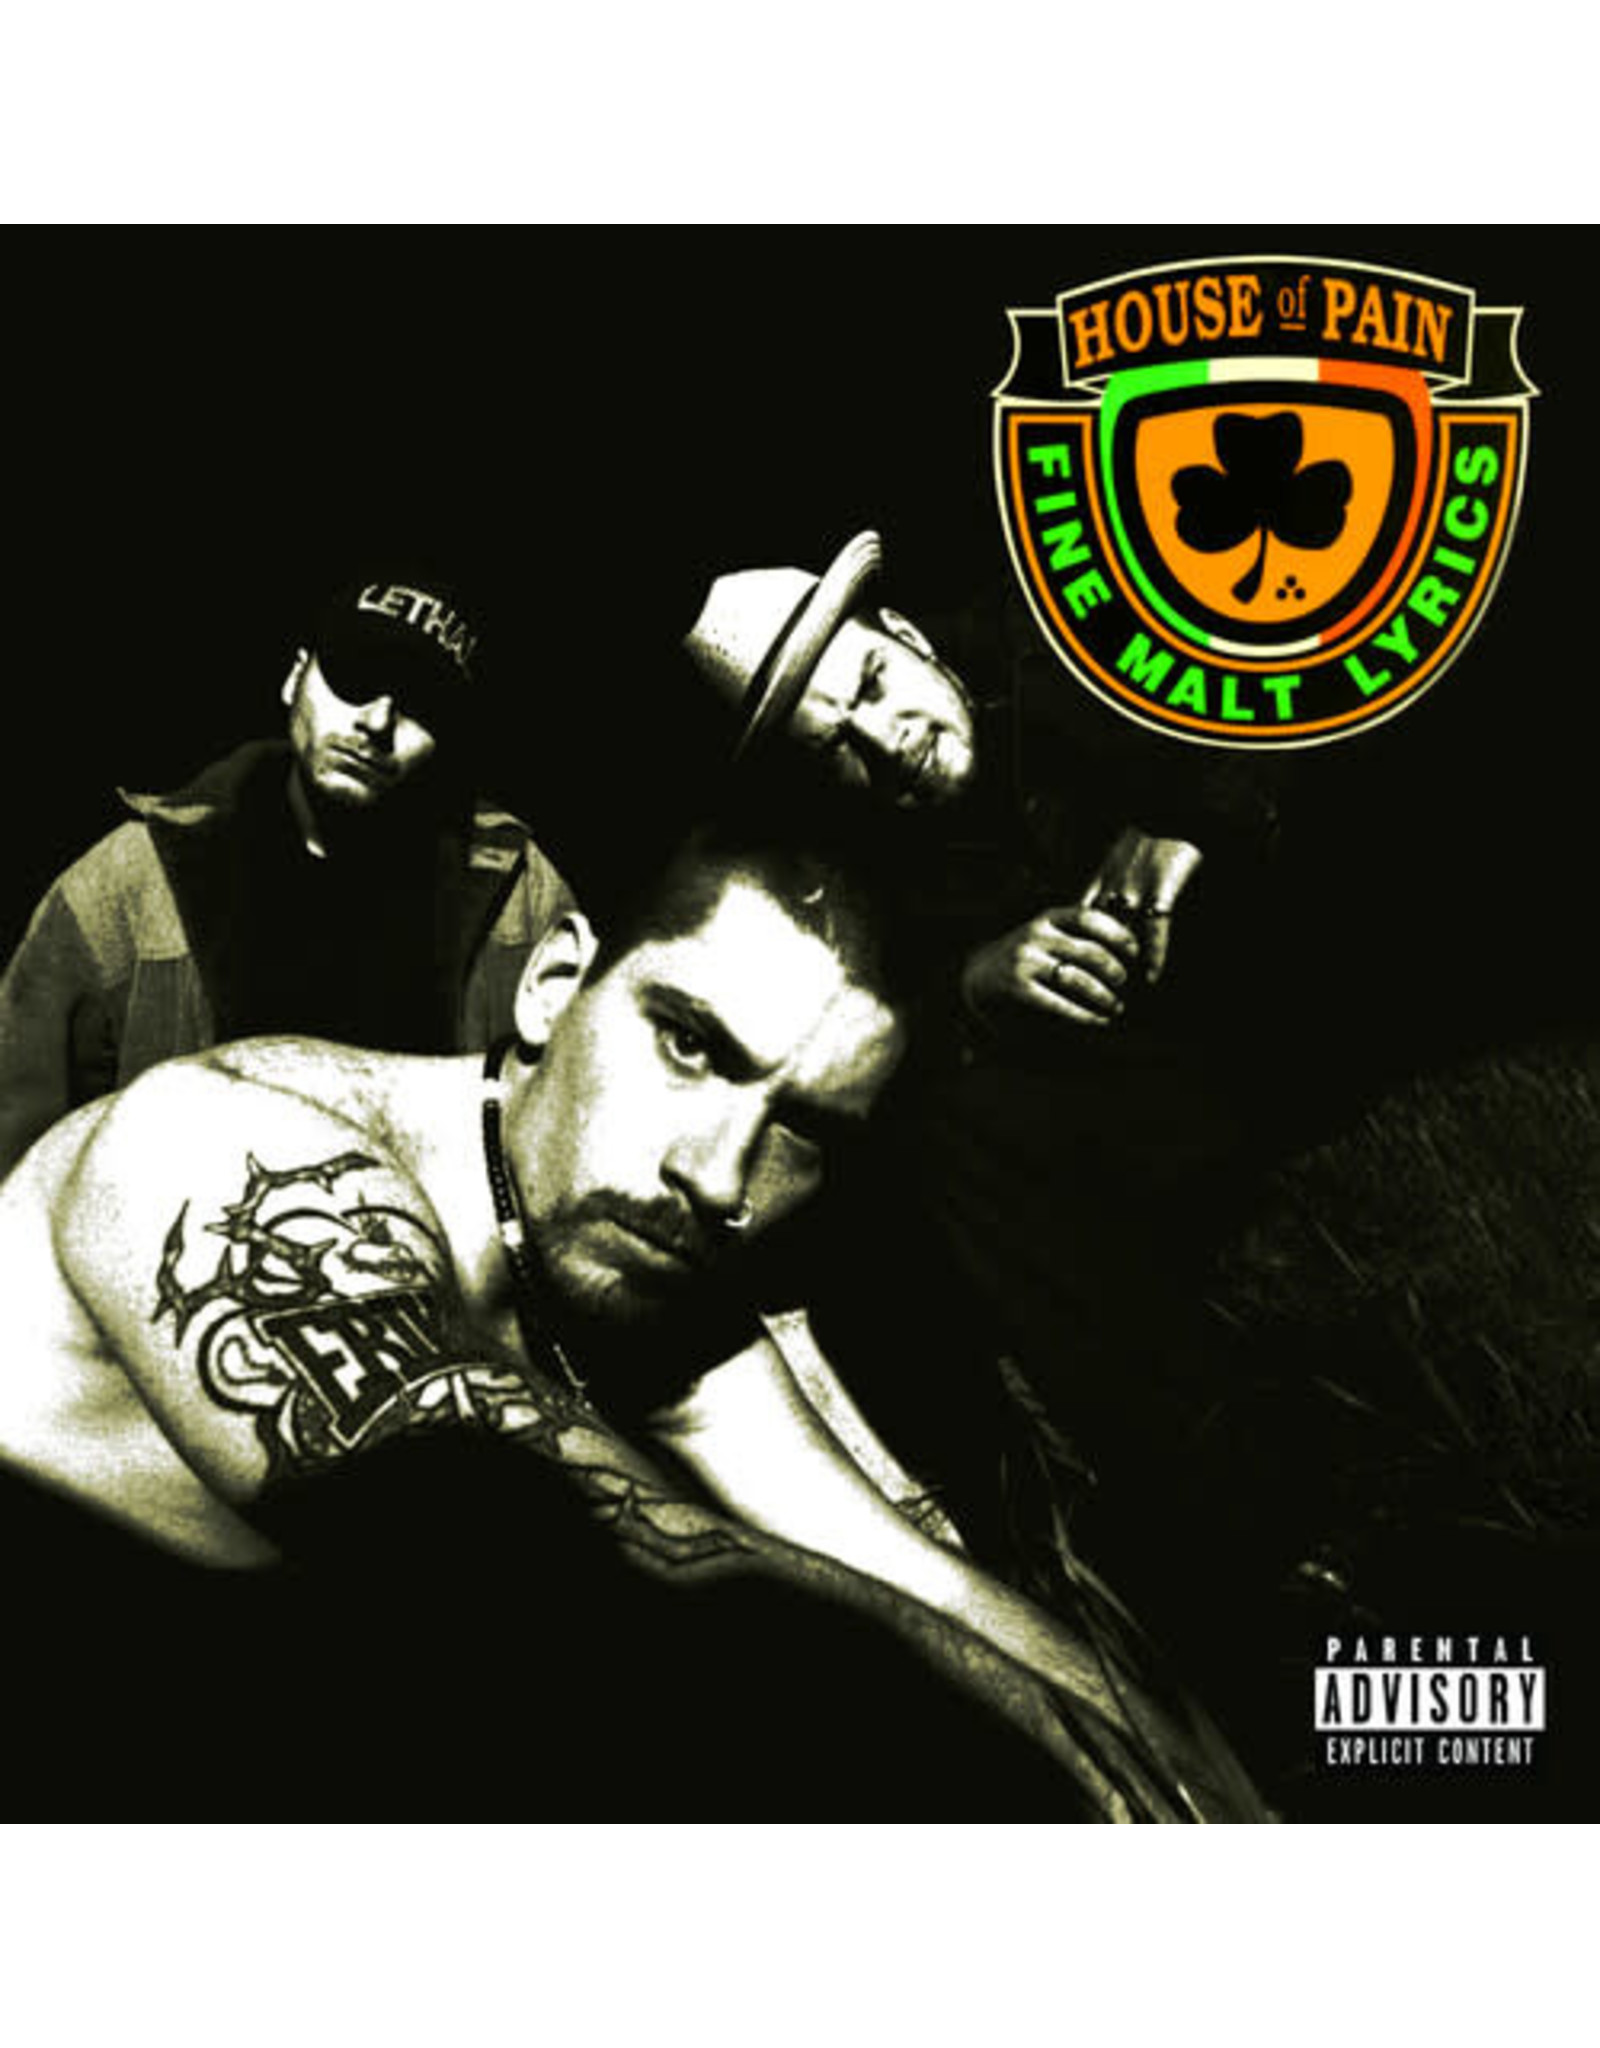 New Vinyl House of Pain - S/T (Fine Malt Lyrics, 30 Years) LP